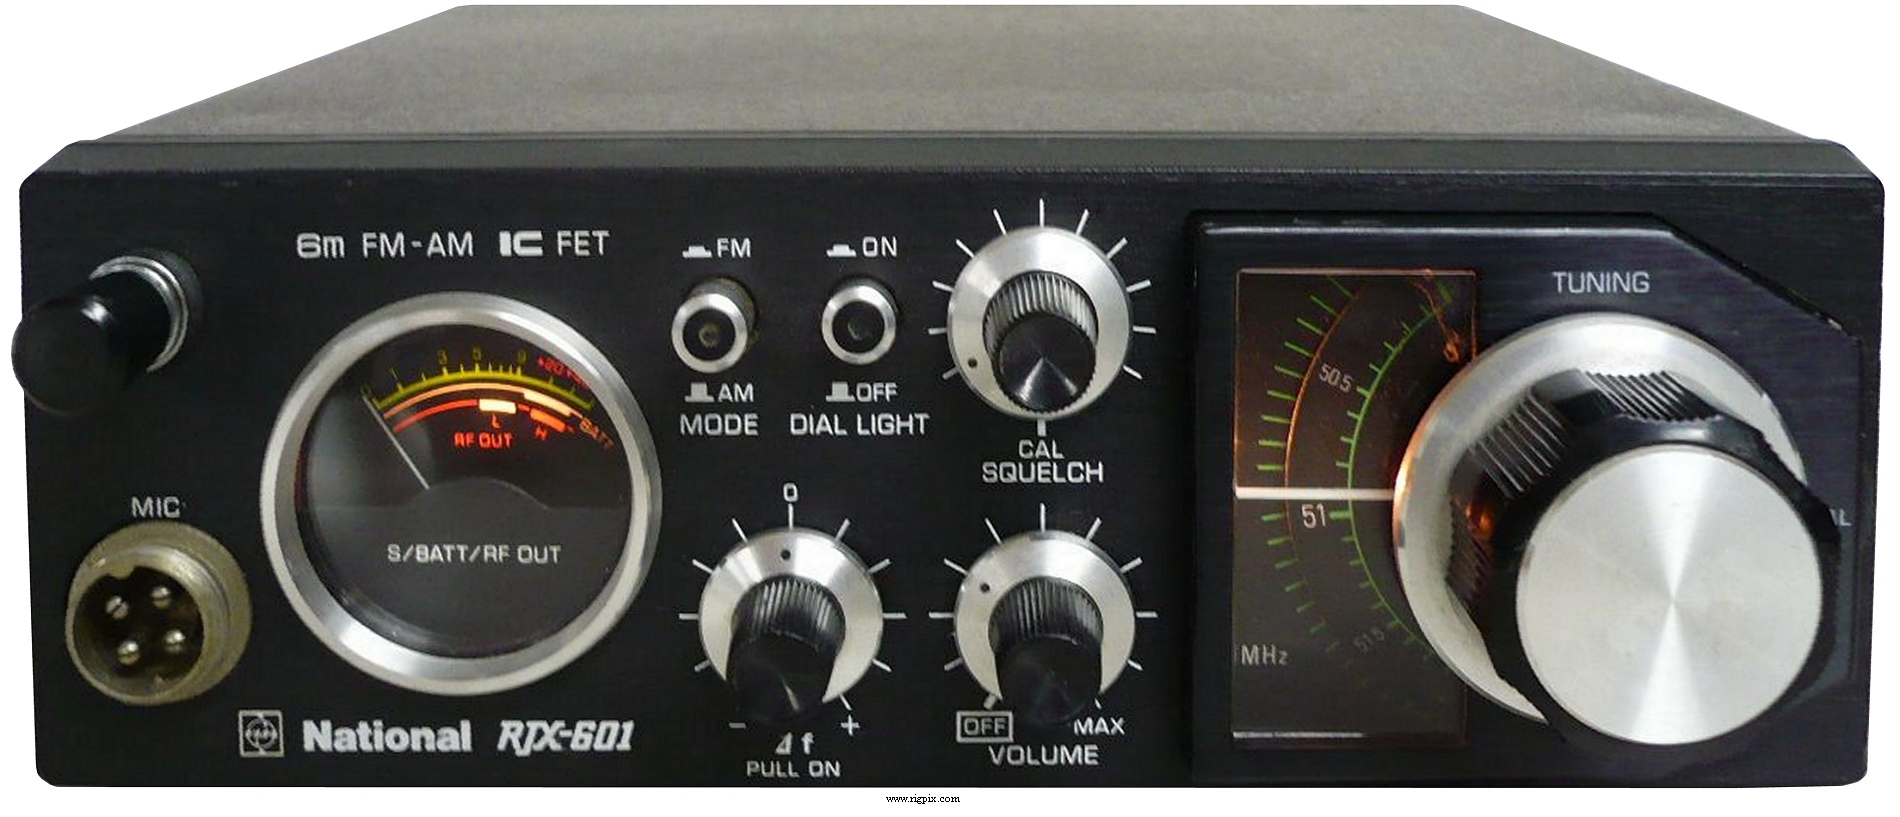 ナショナル RJX-601 50MHz FM-AM トランシーバー - アマチュア無線